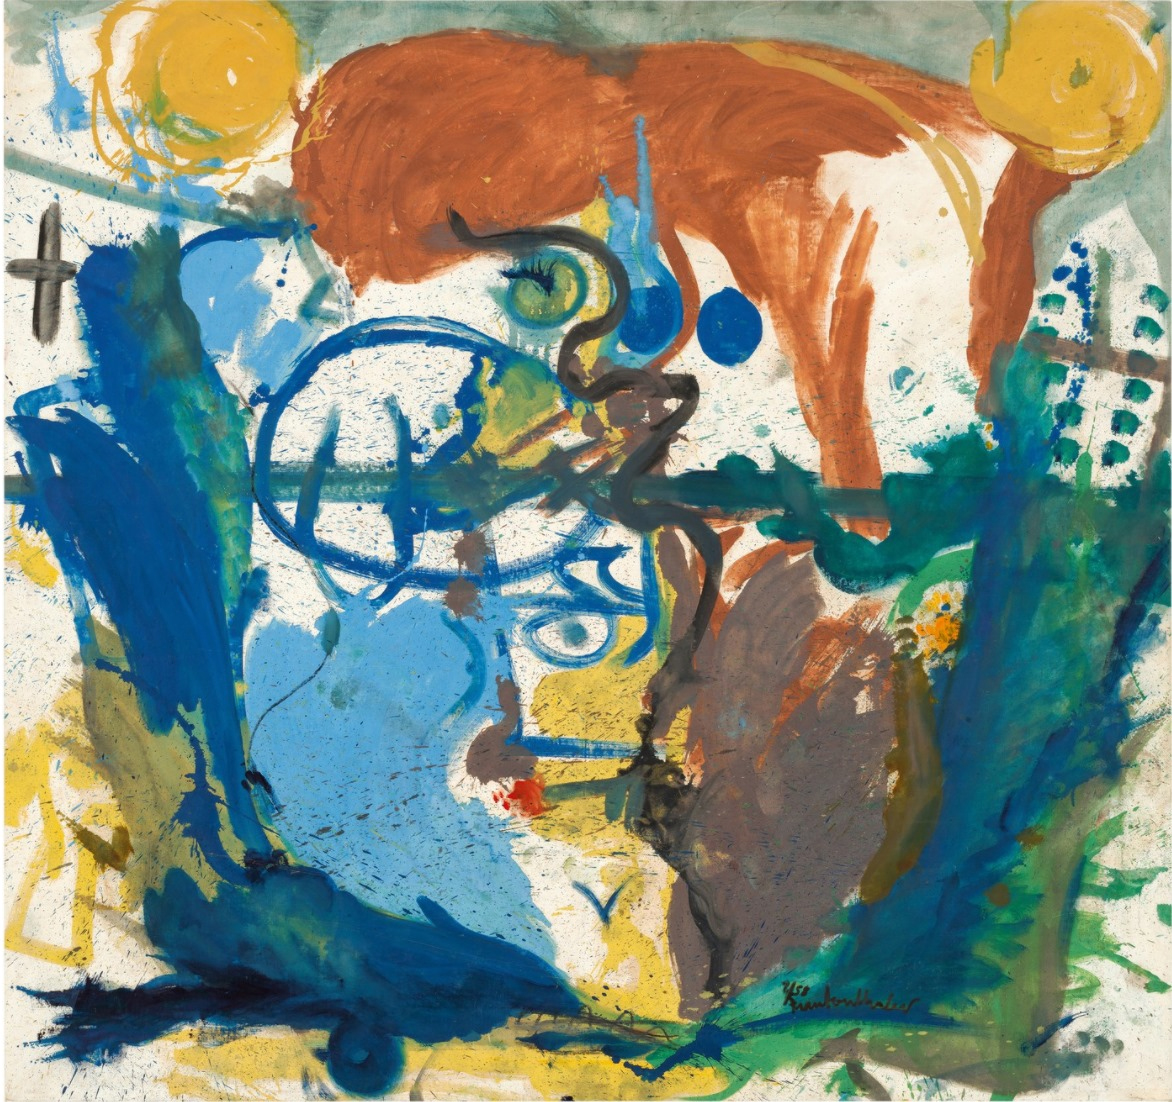 헬렌 프랑켄탈러(Helen Frankenthaler), 미국, 화가, 1928-2011